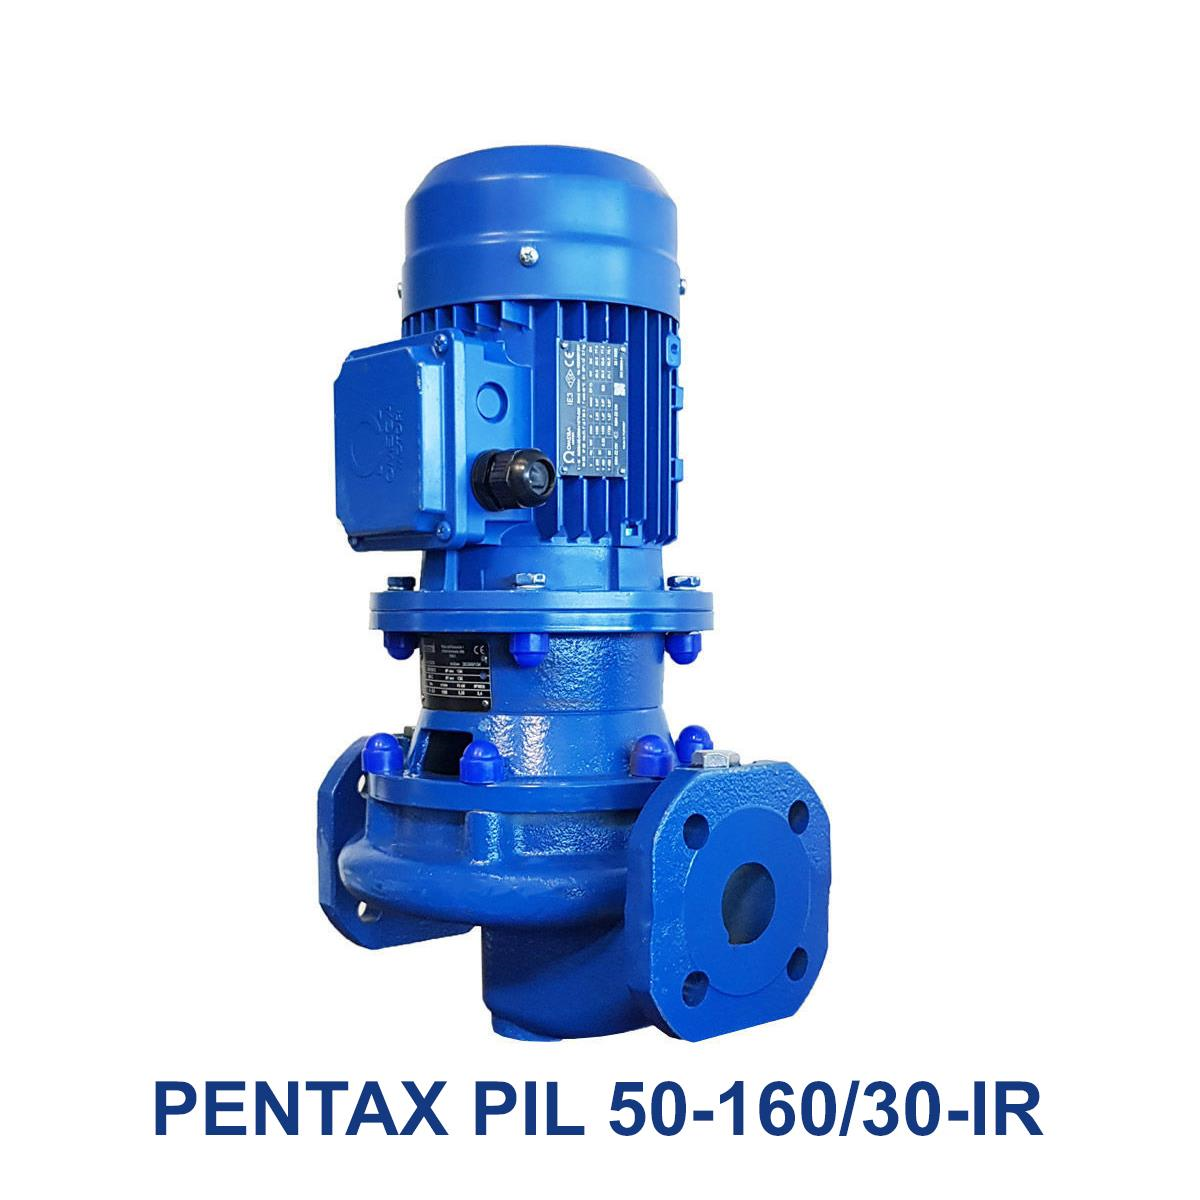 PENTAX-PIL-50-160-30-IR